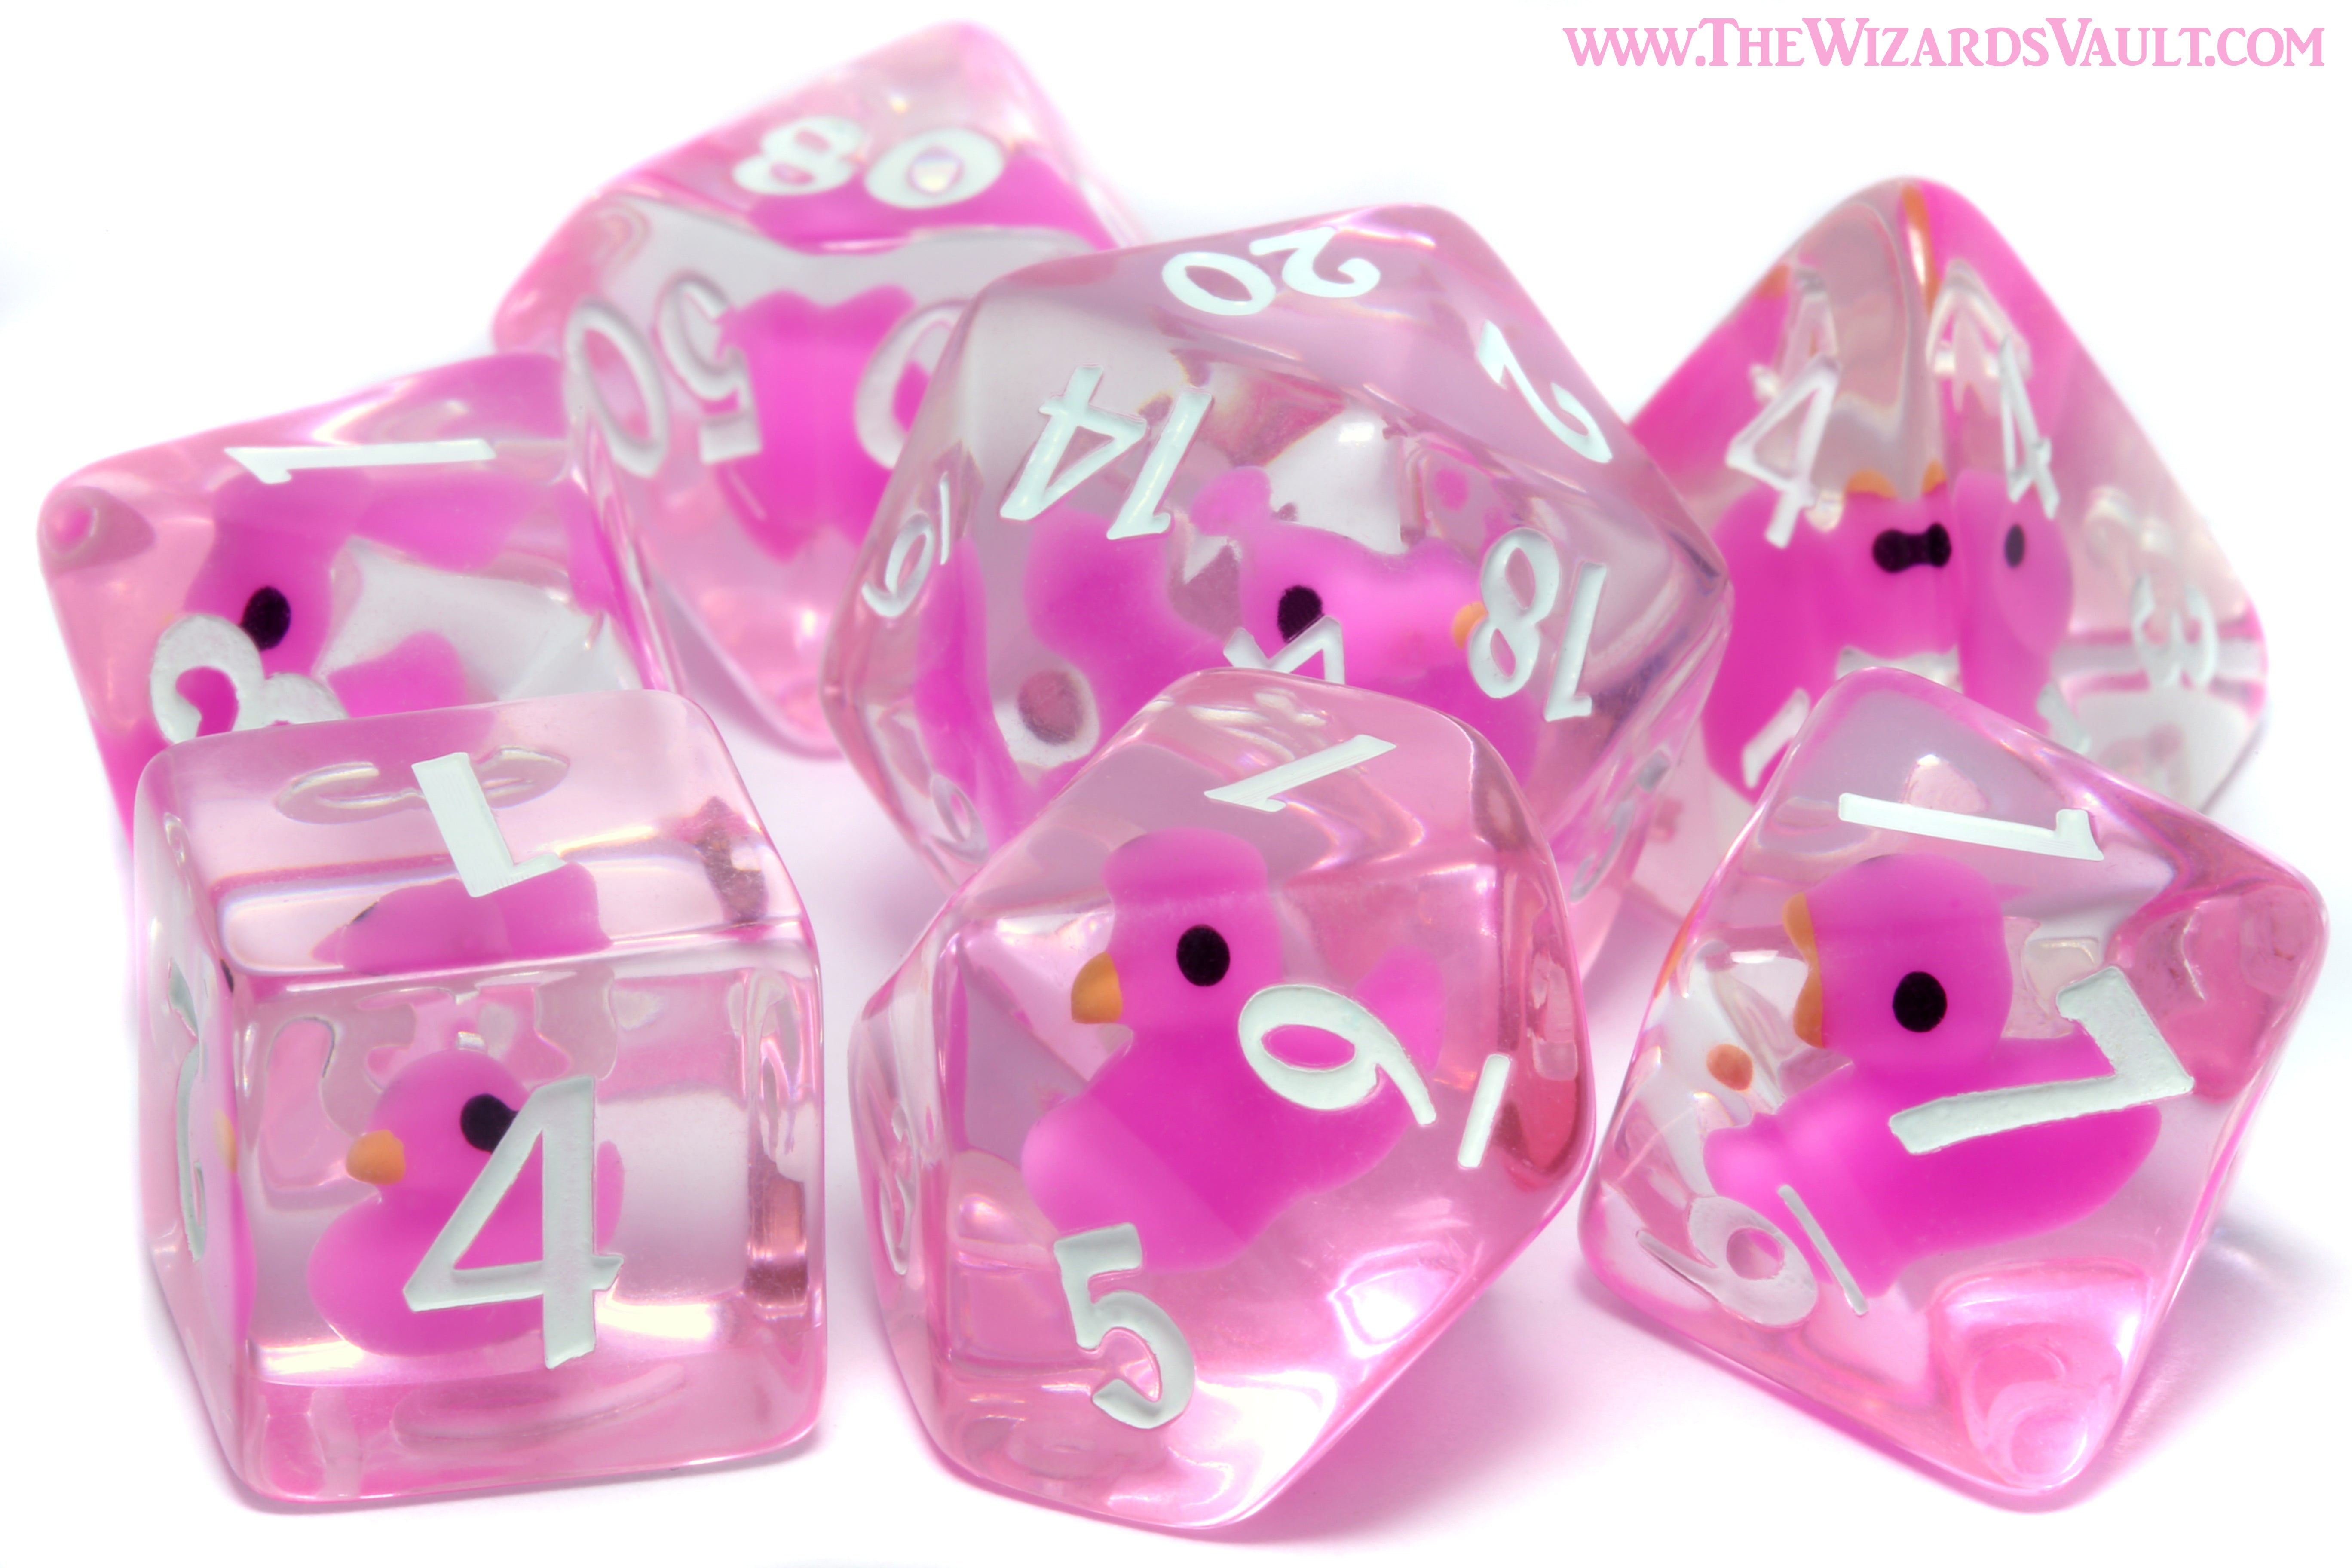 Hot Pink Ducklings of Doom dice Set - The Wizard's Vault